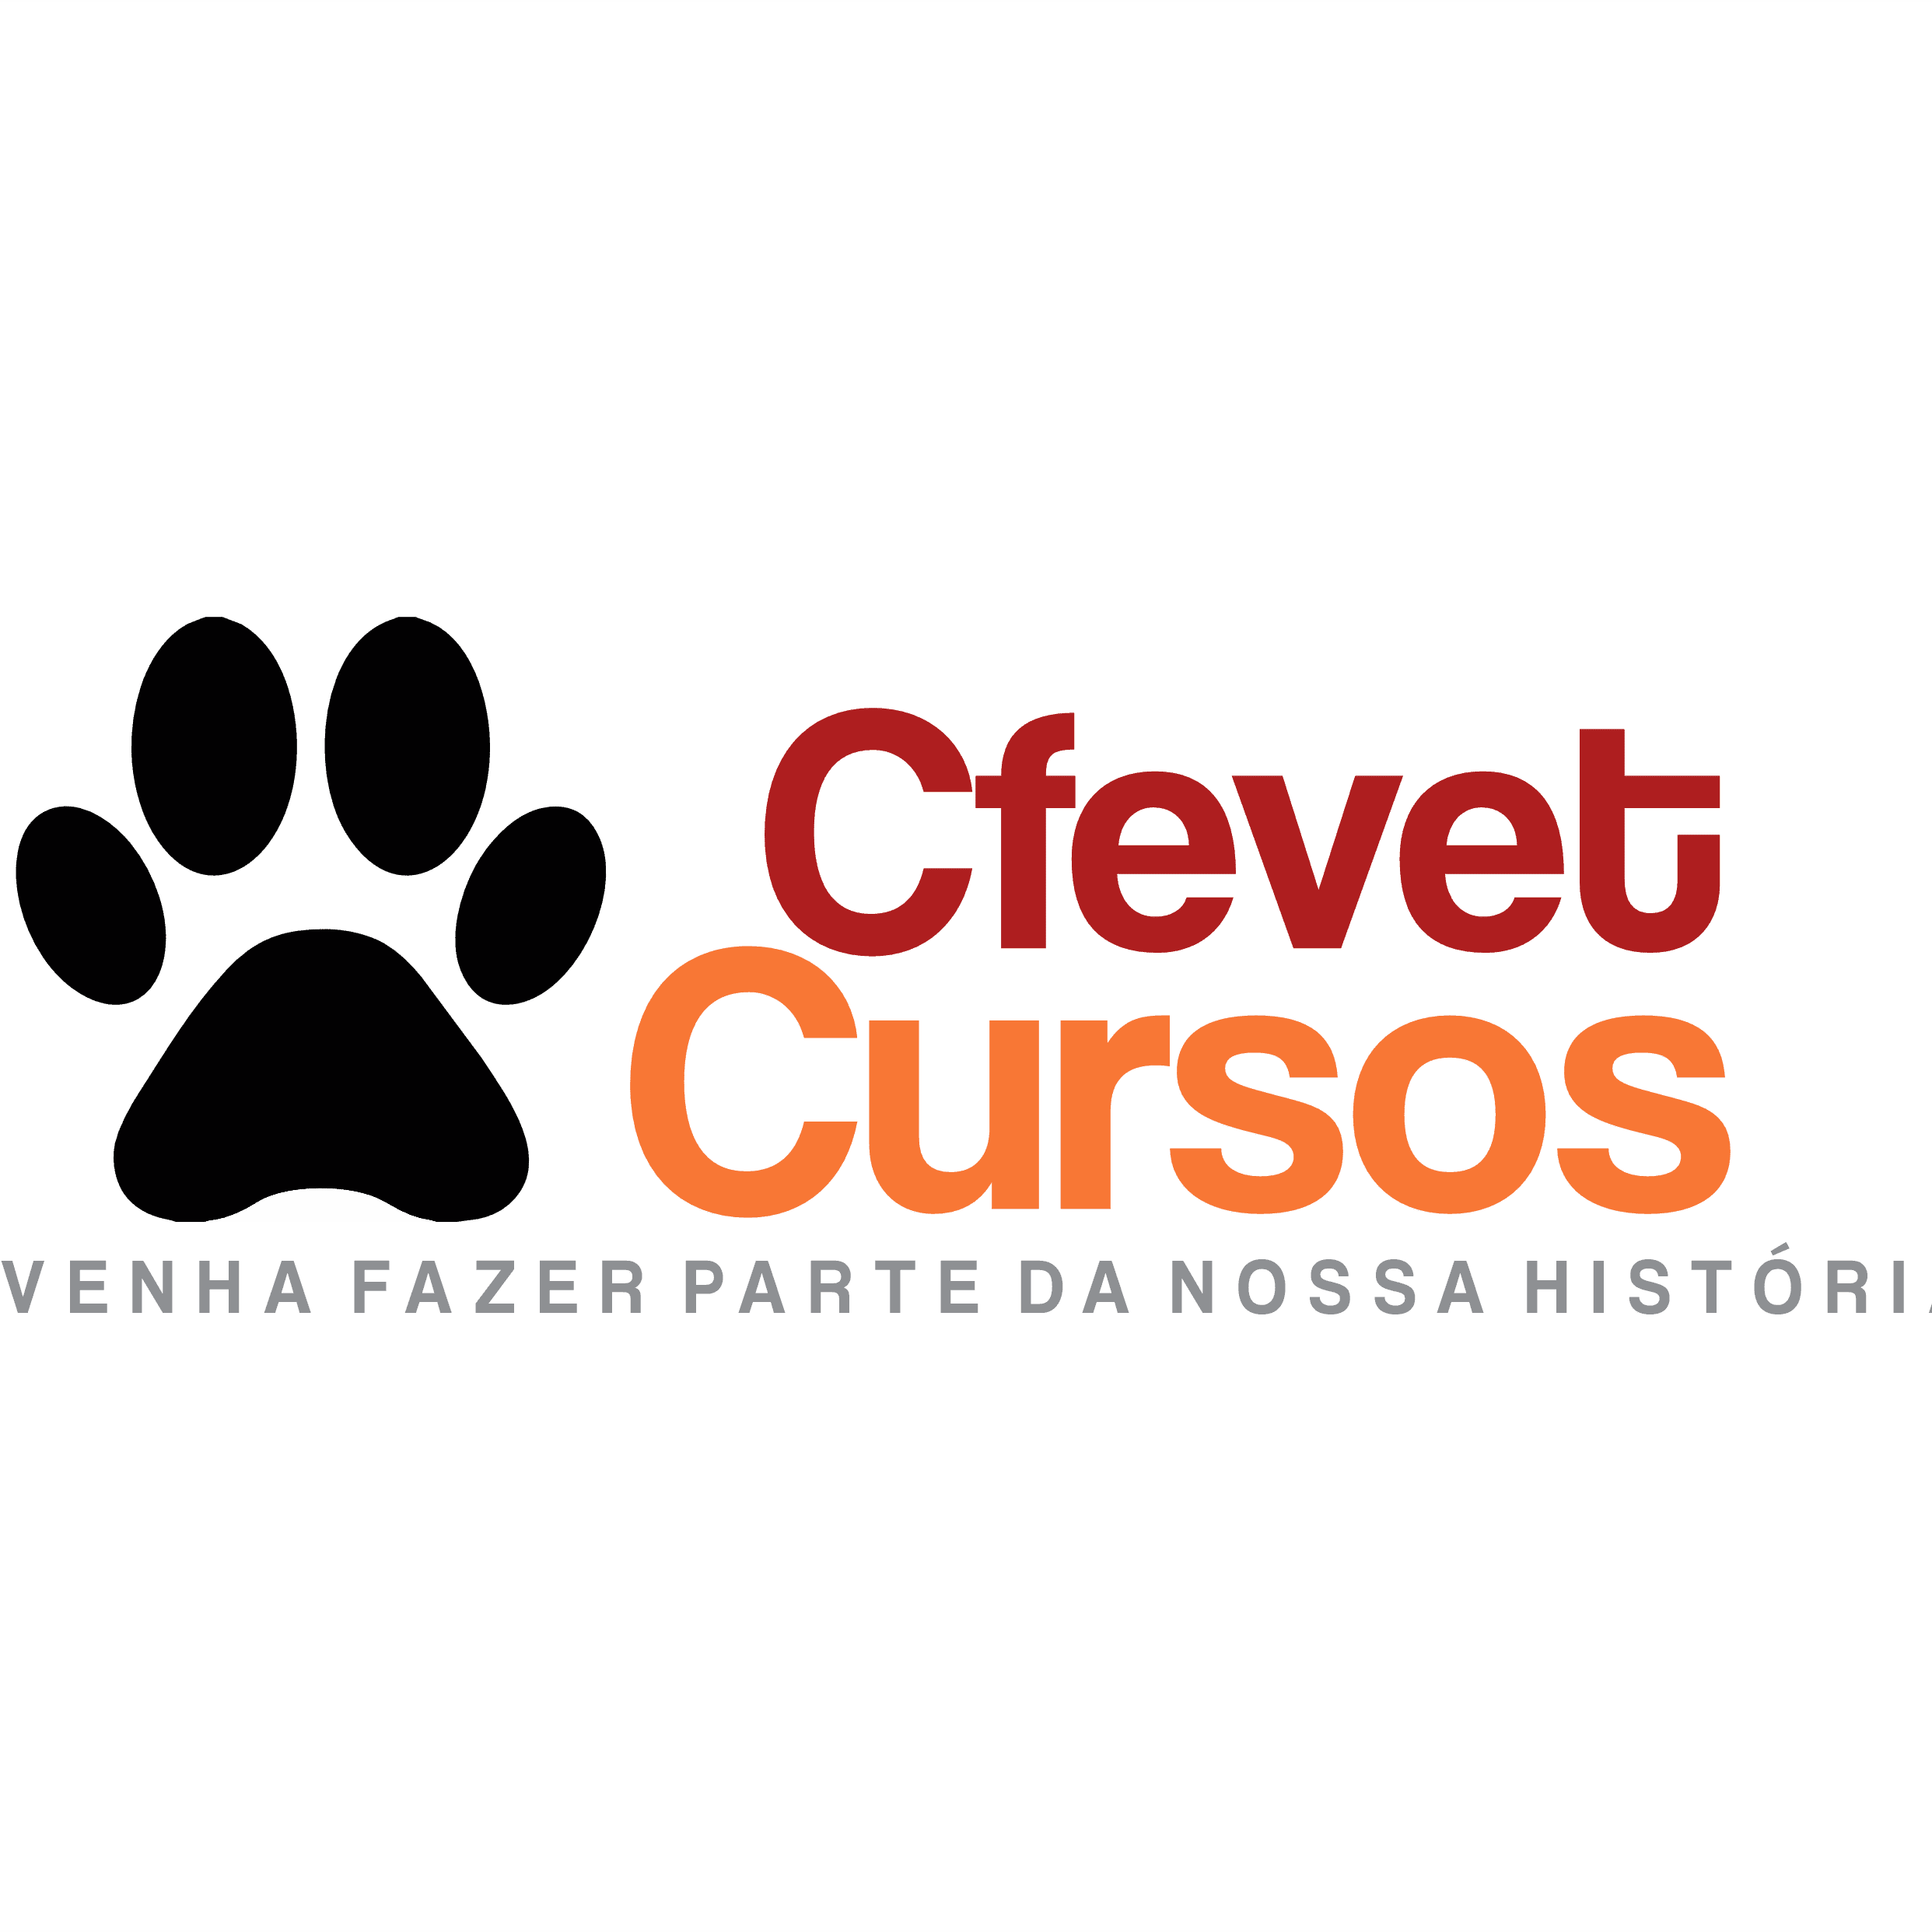 Cfevet Cursos